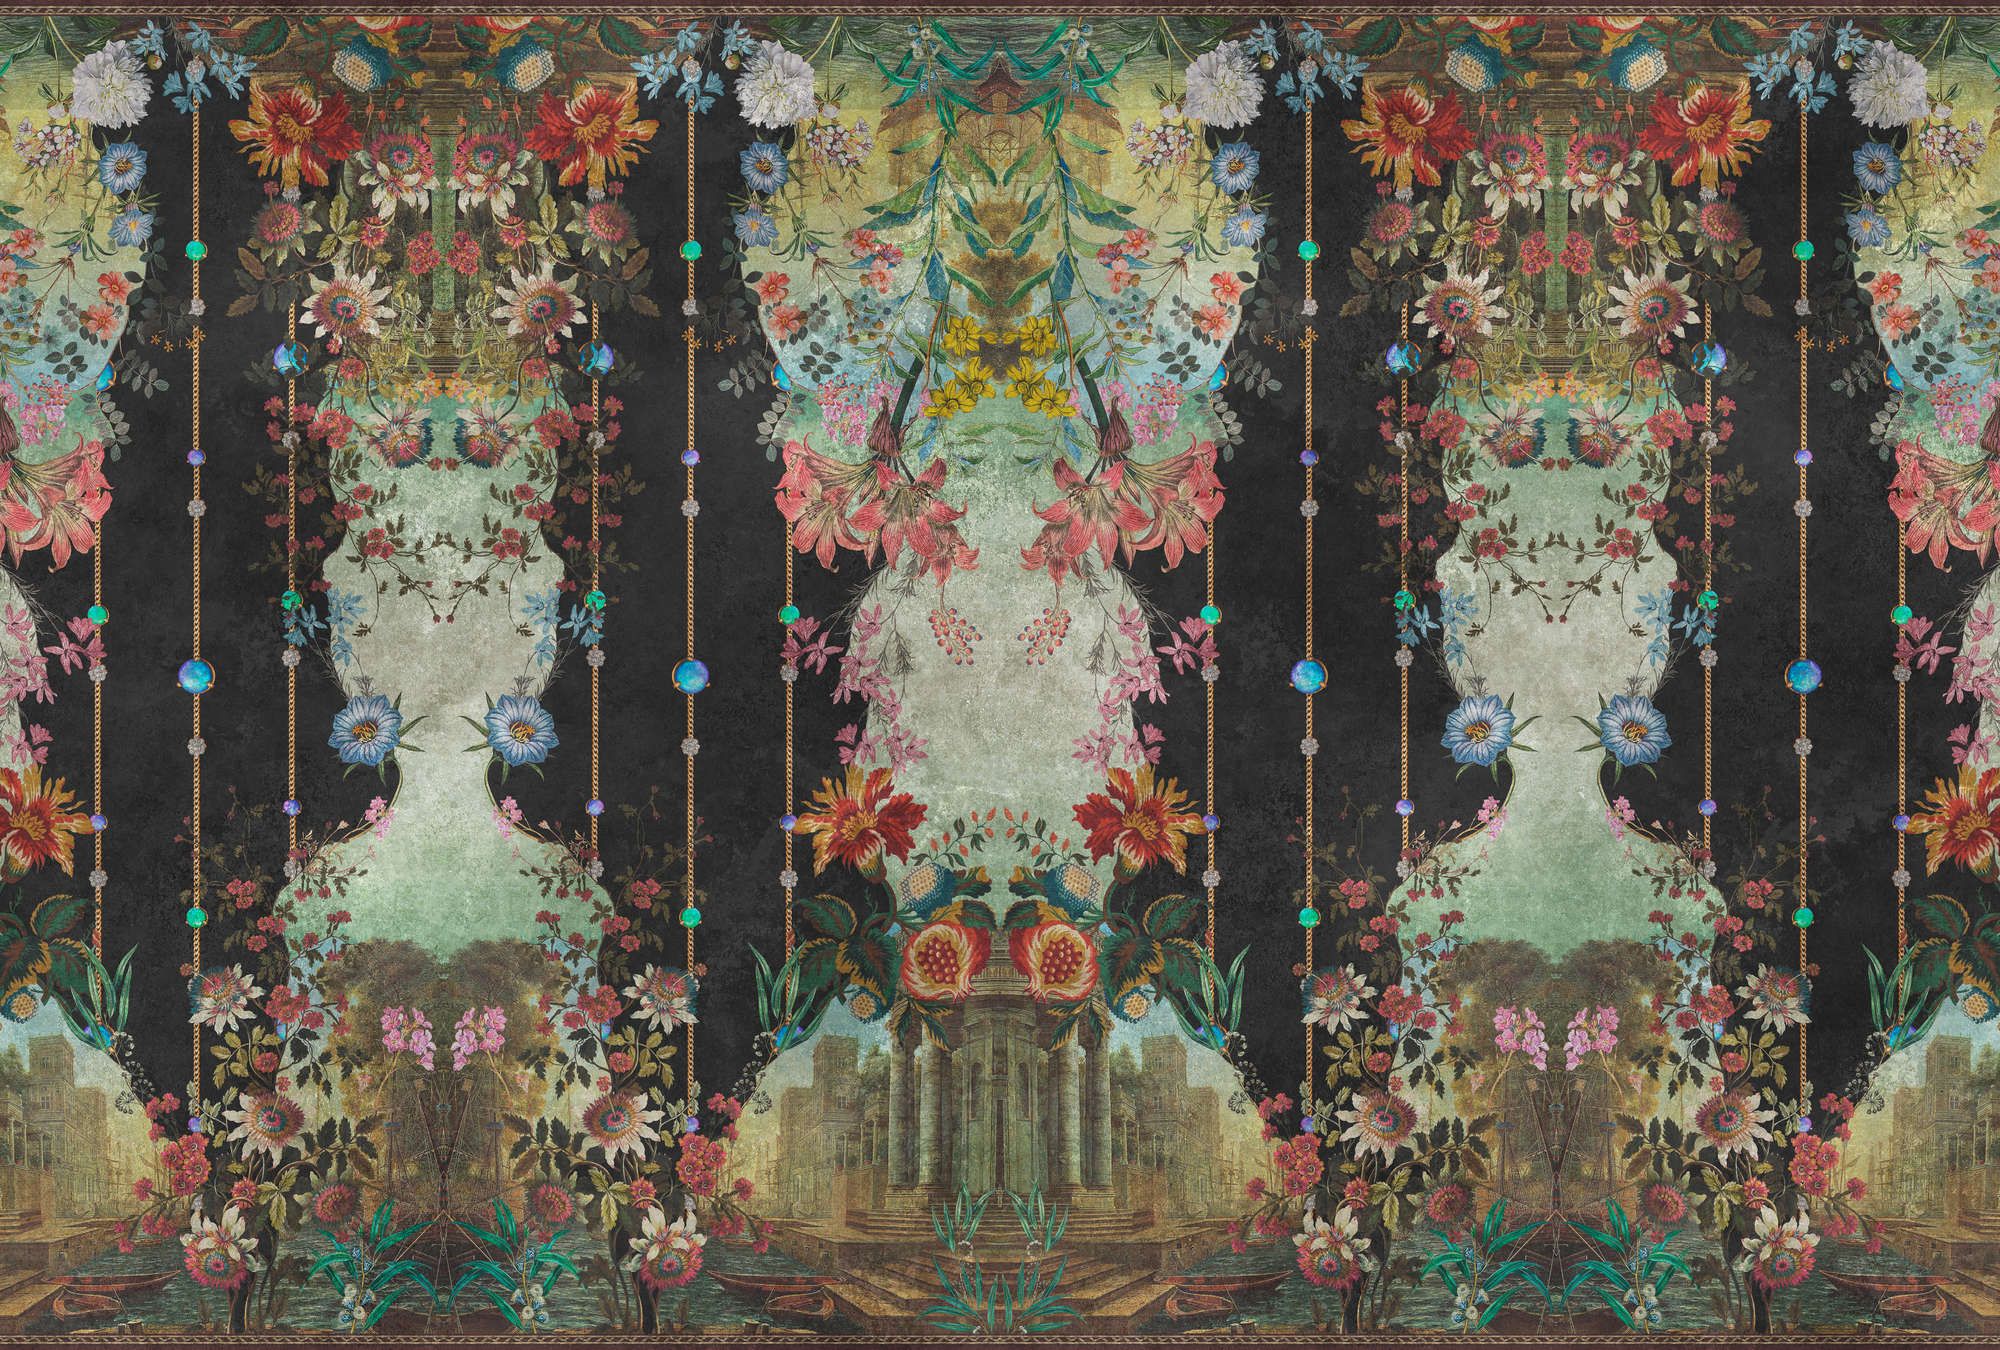             Papel pintado »ophelia« - Revestimiento ornamental con motivo floral sobre textura de escayola vintage - Material sin tejer liso, ligeramente nacarado.
        